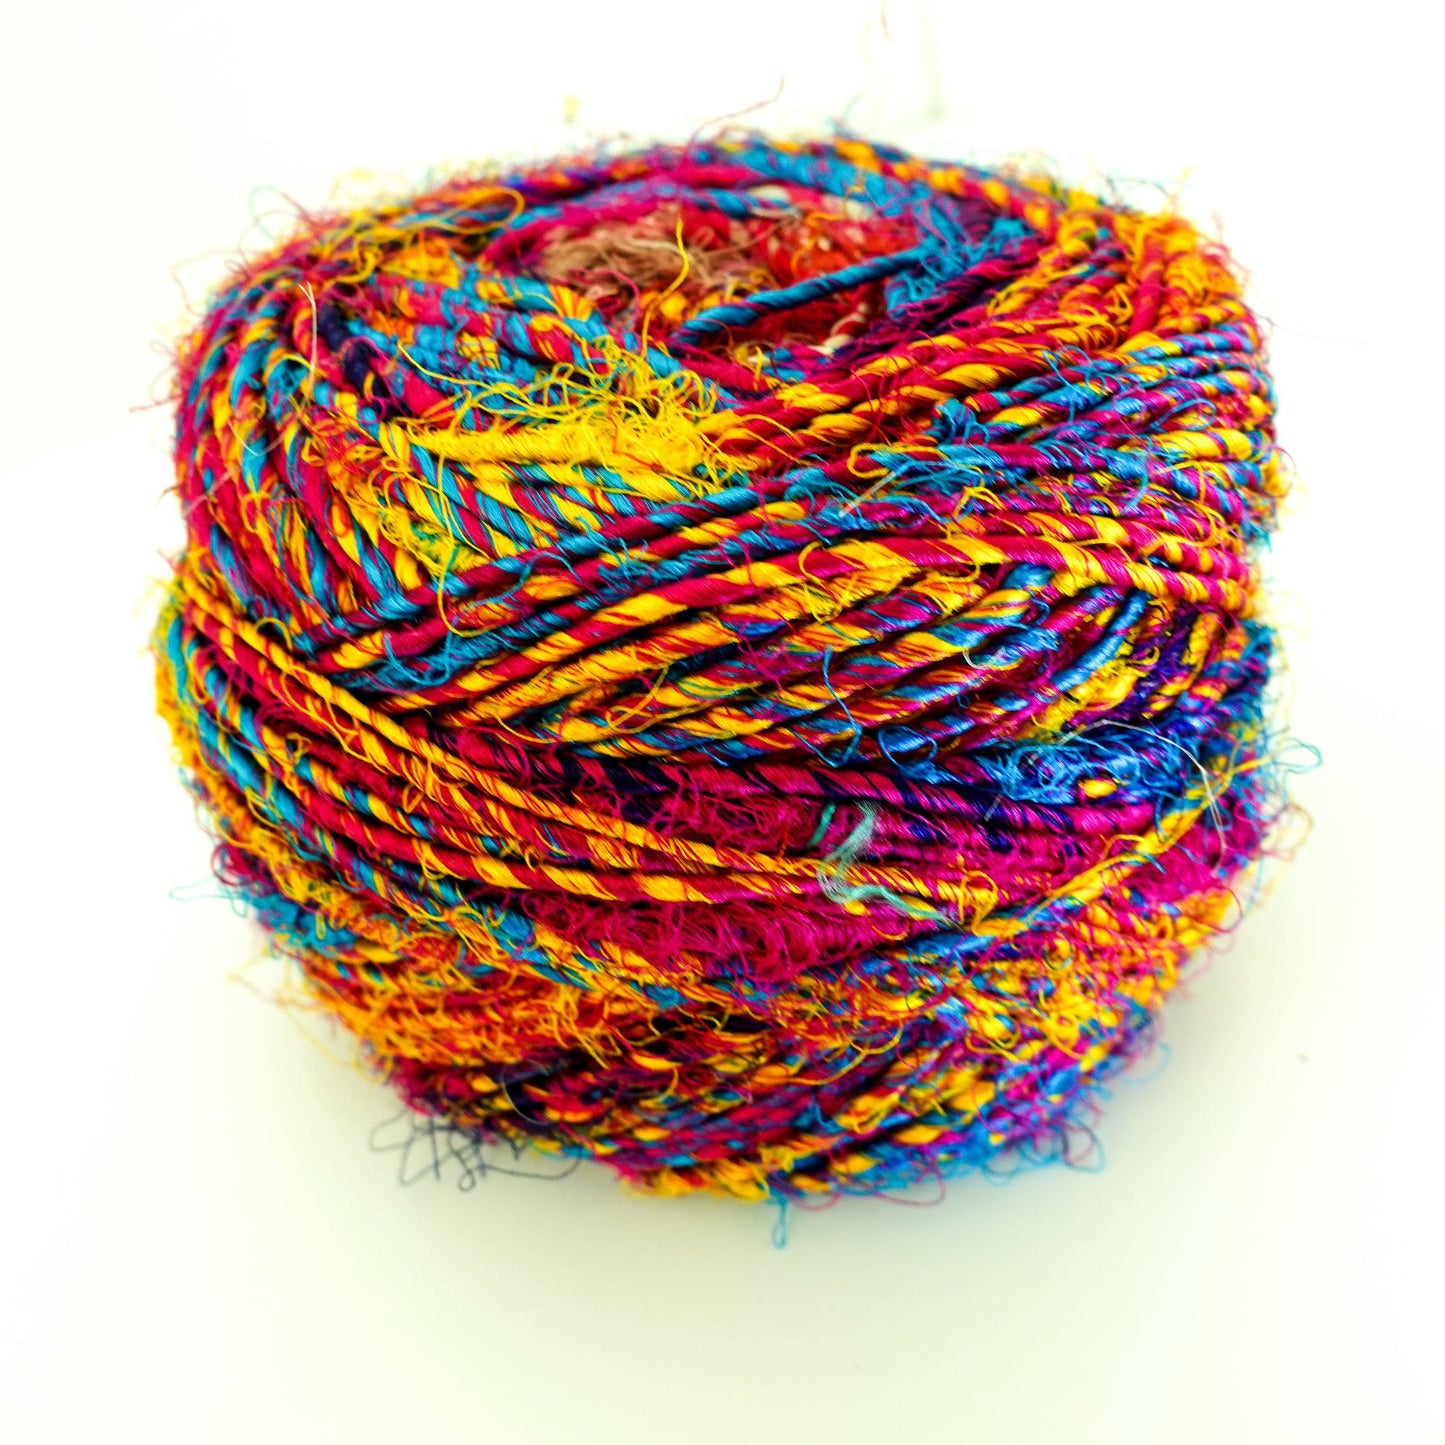 Revolution Fibers Multi-Color Recycled Sari Silk Yarn, Handspun Sari Fabric Scrap Yarn Cakes | 100 Grams per Ball